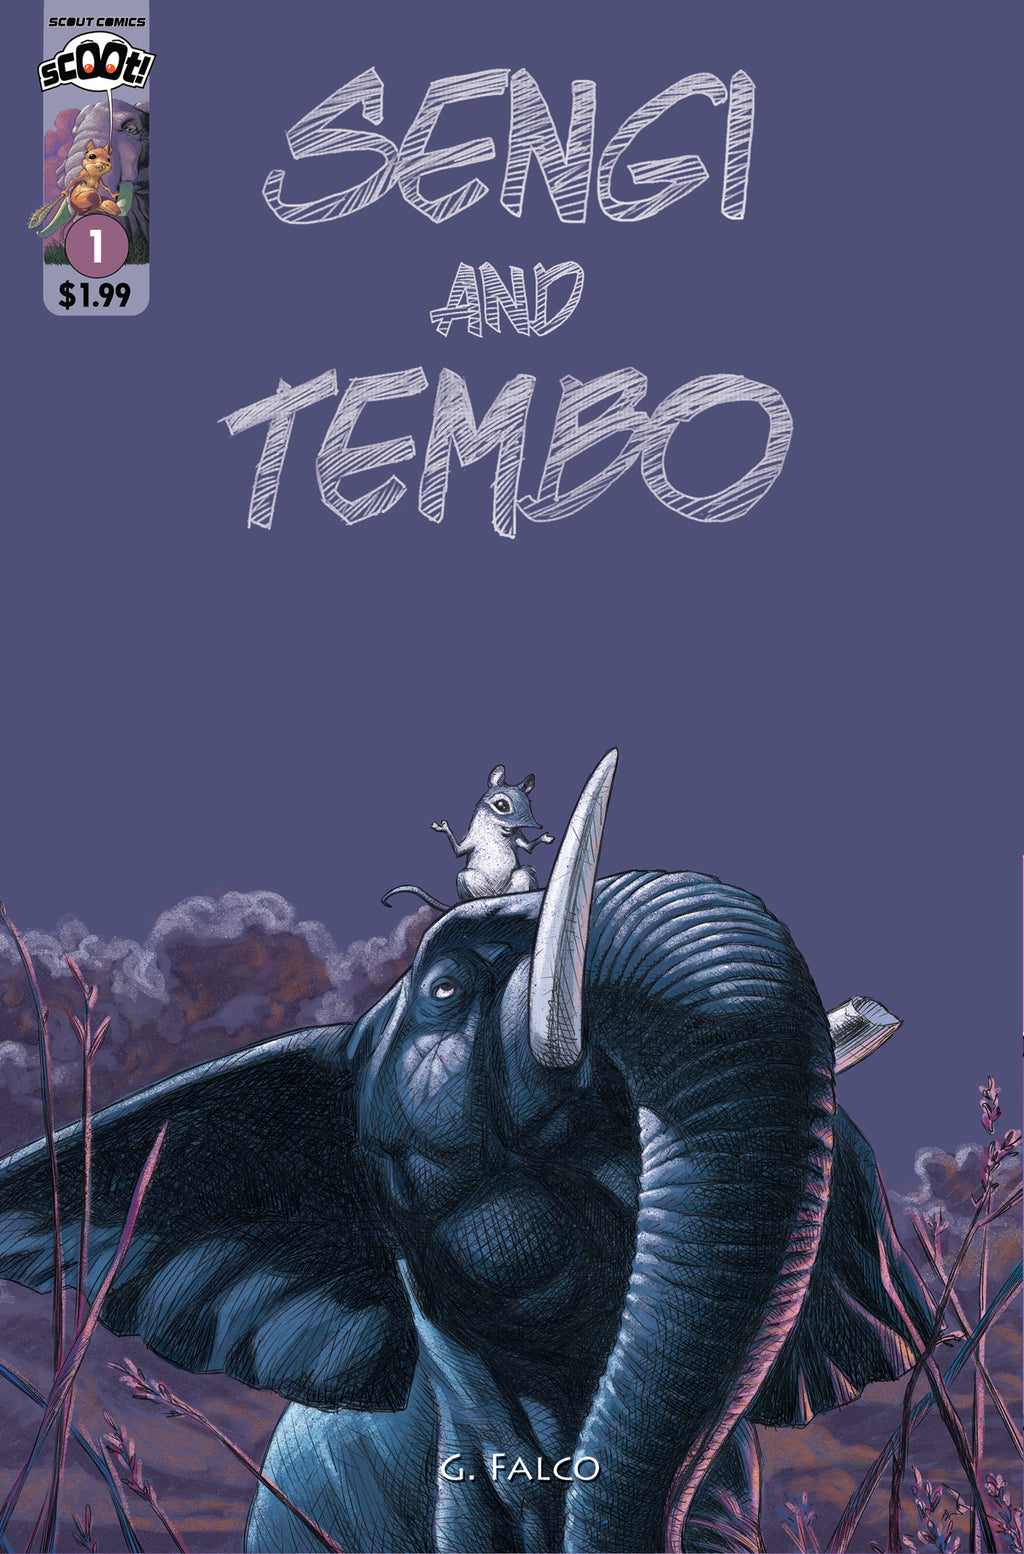 Sengi And Tembo #1